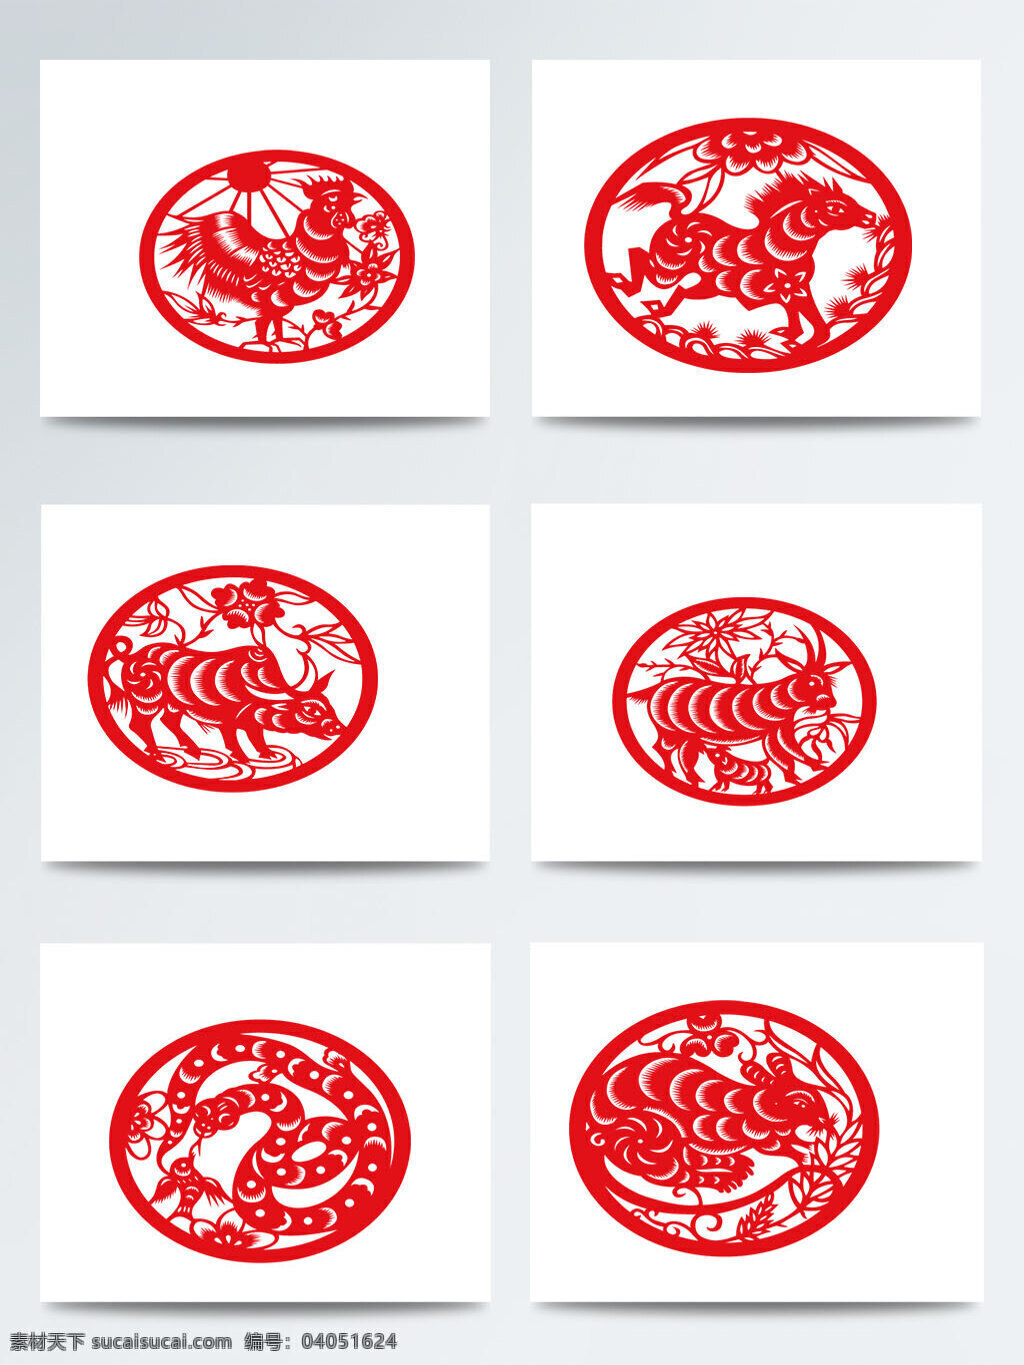 拜年 除夕 传统习俗 春节 狗年 剪纸 新年 元素 中国传统 祝福 红色 图案